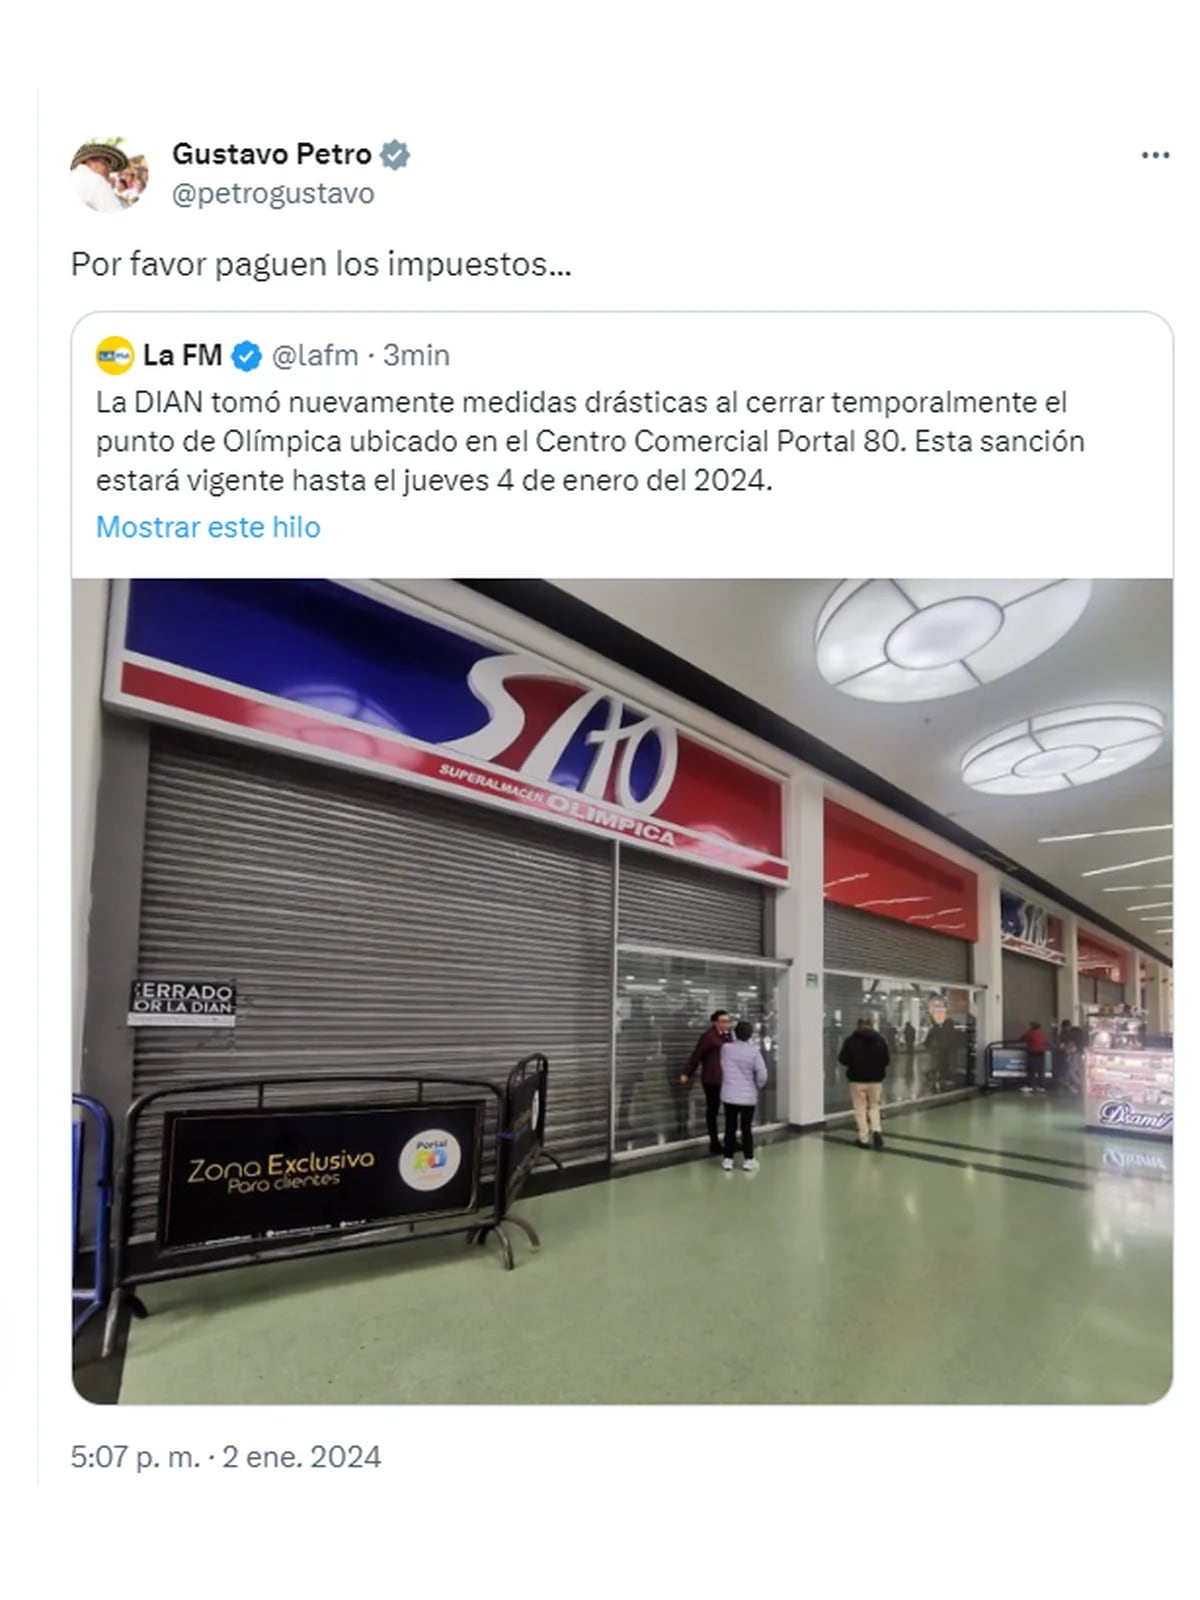 Dian cerró almacén Olímpica en Bogotá y Petro ironizó: “Por favor paguen  los impuestos” - Infobae